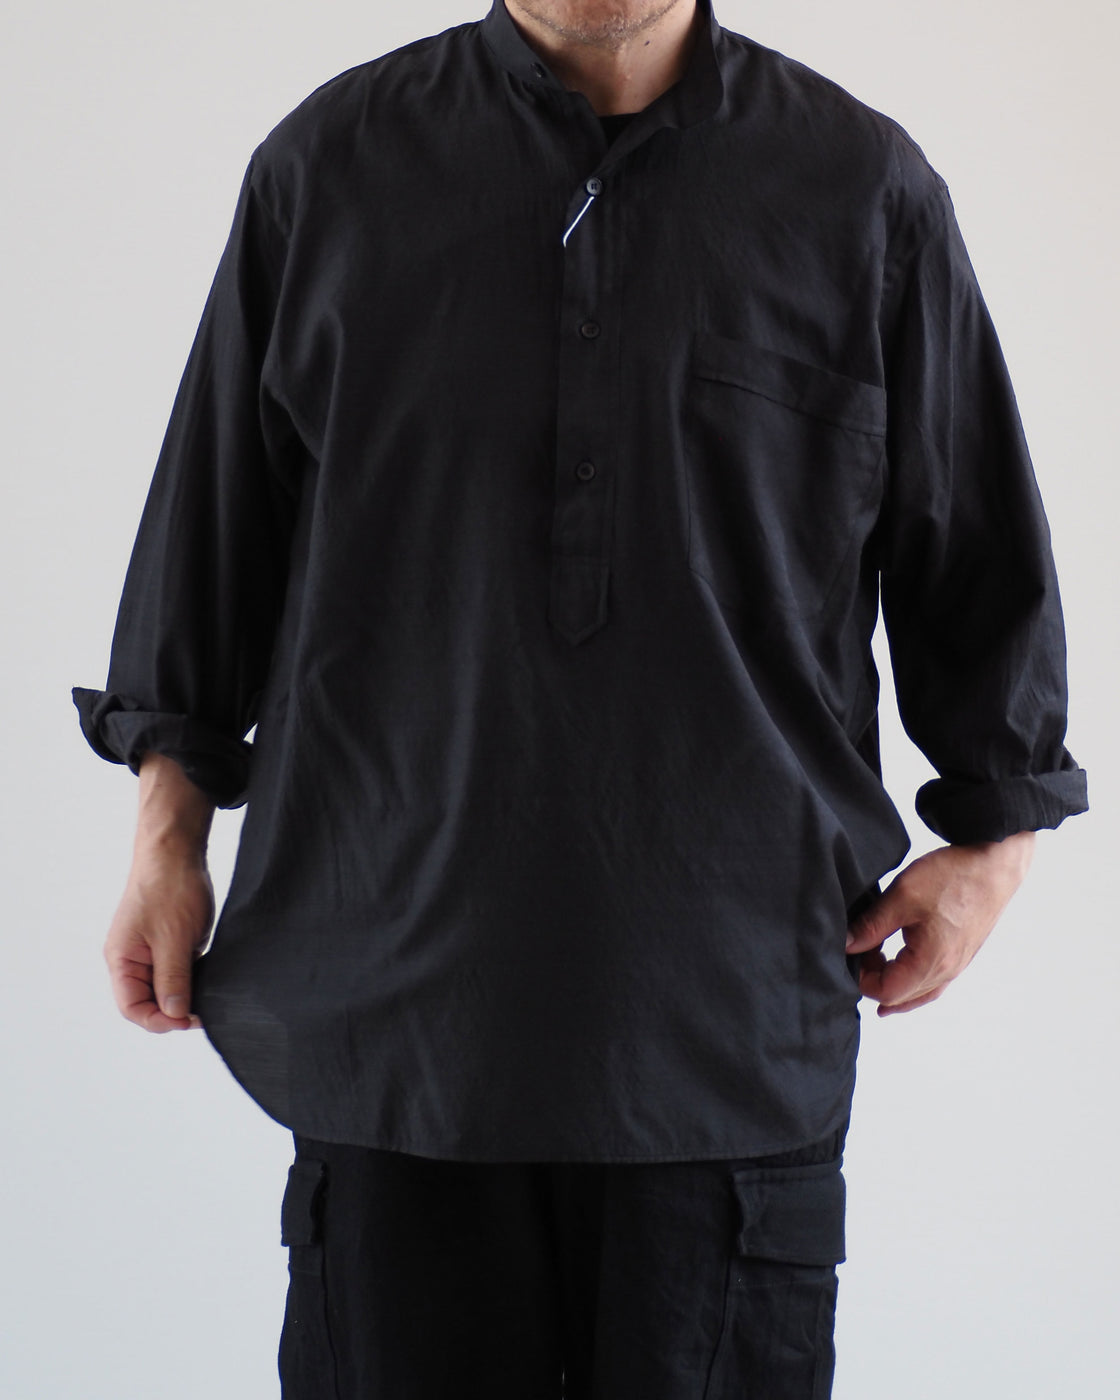 日本店舗COMOLI22SSウールシルクプルオーバーシャツ チャコール サイズ3 新品 シャツ